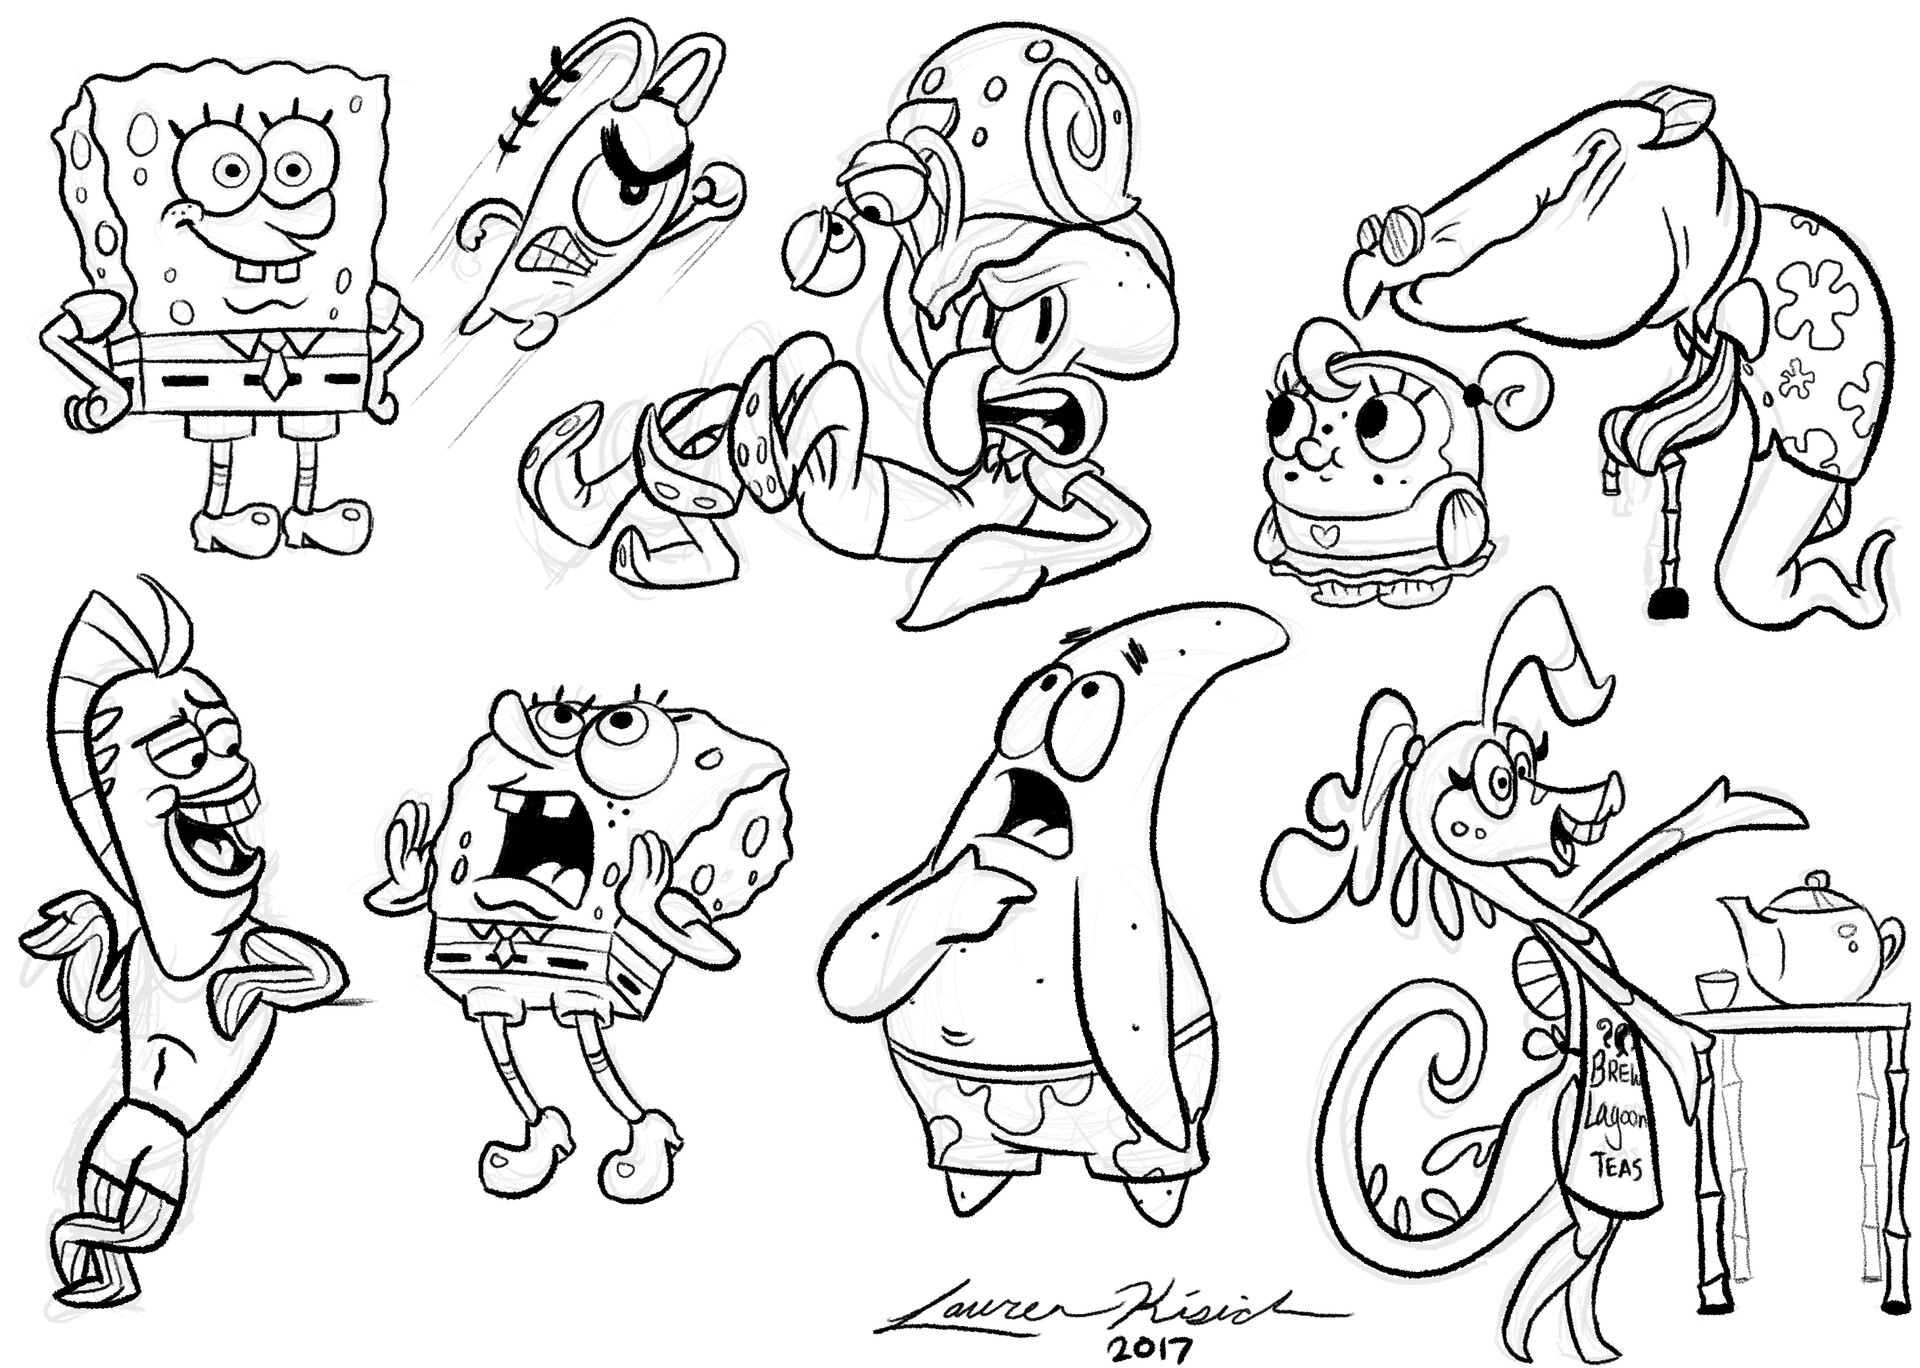 Spongebob Character Design